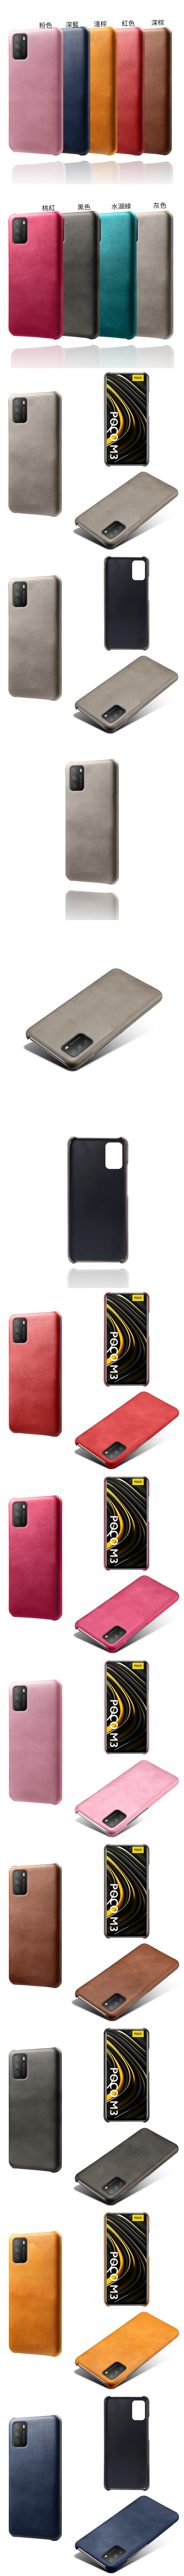 小米 POCO F3 皮革保護殼(PLAIN) - 牛皮仿真皮紋單色背蓋素色多色手機殼保護套手機套